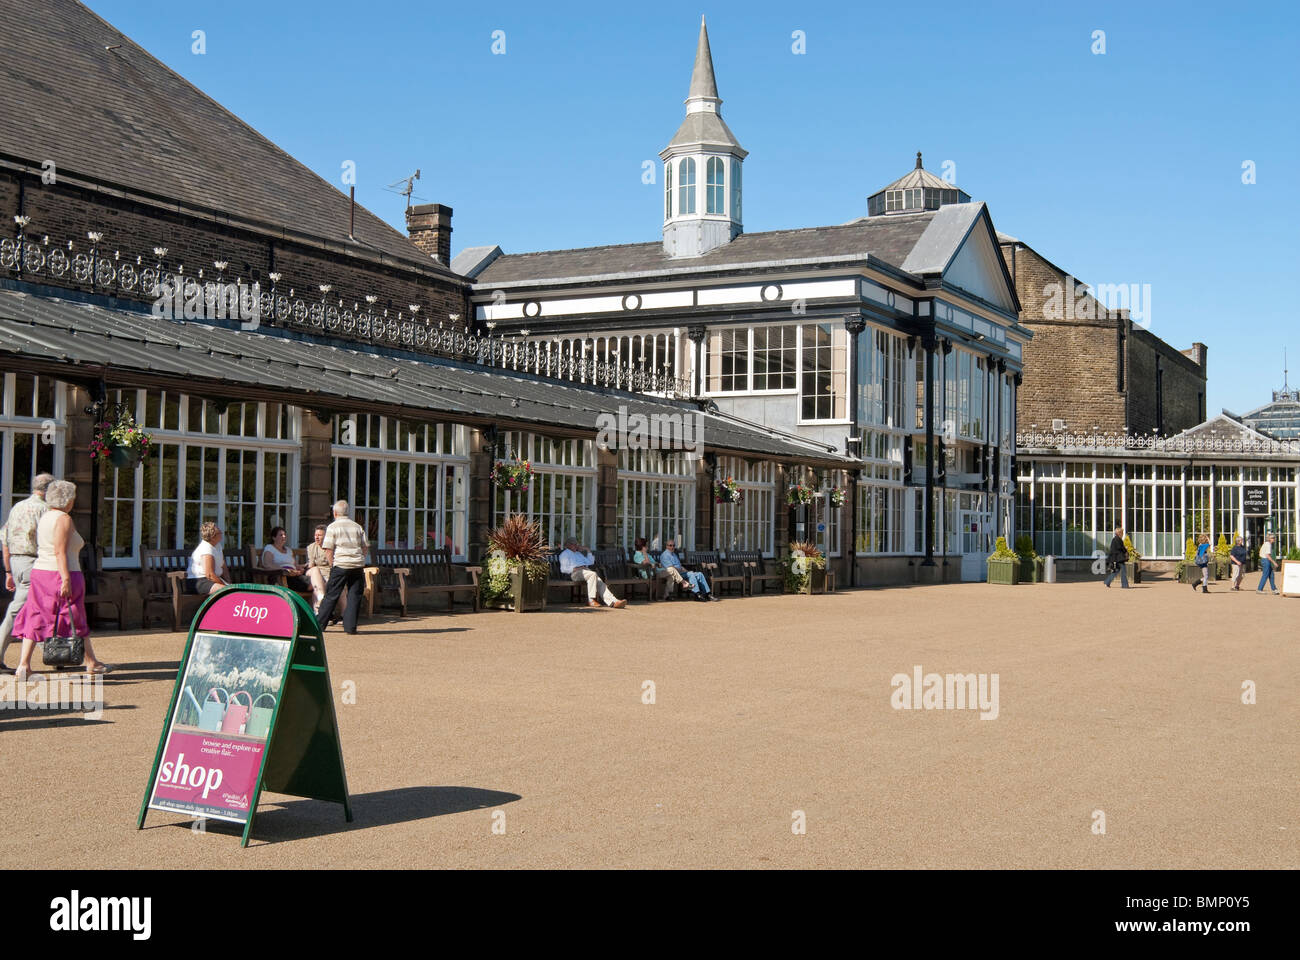 Bild der Pavillon Gärten in Buxton, einen historischen Ort befindet sich im Herzen von Buxton. Stockfoto